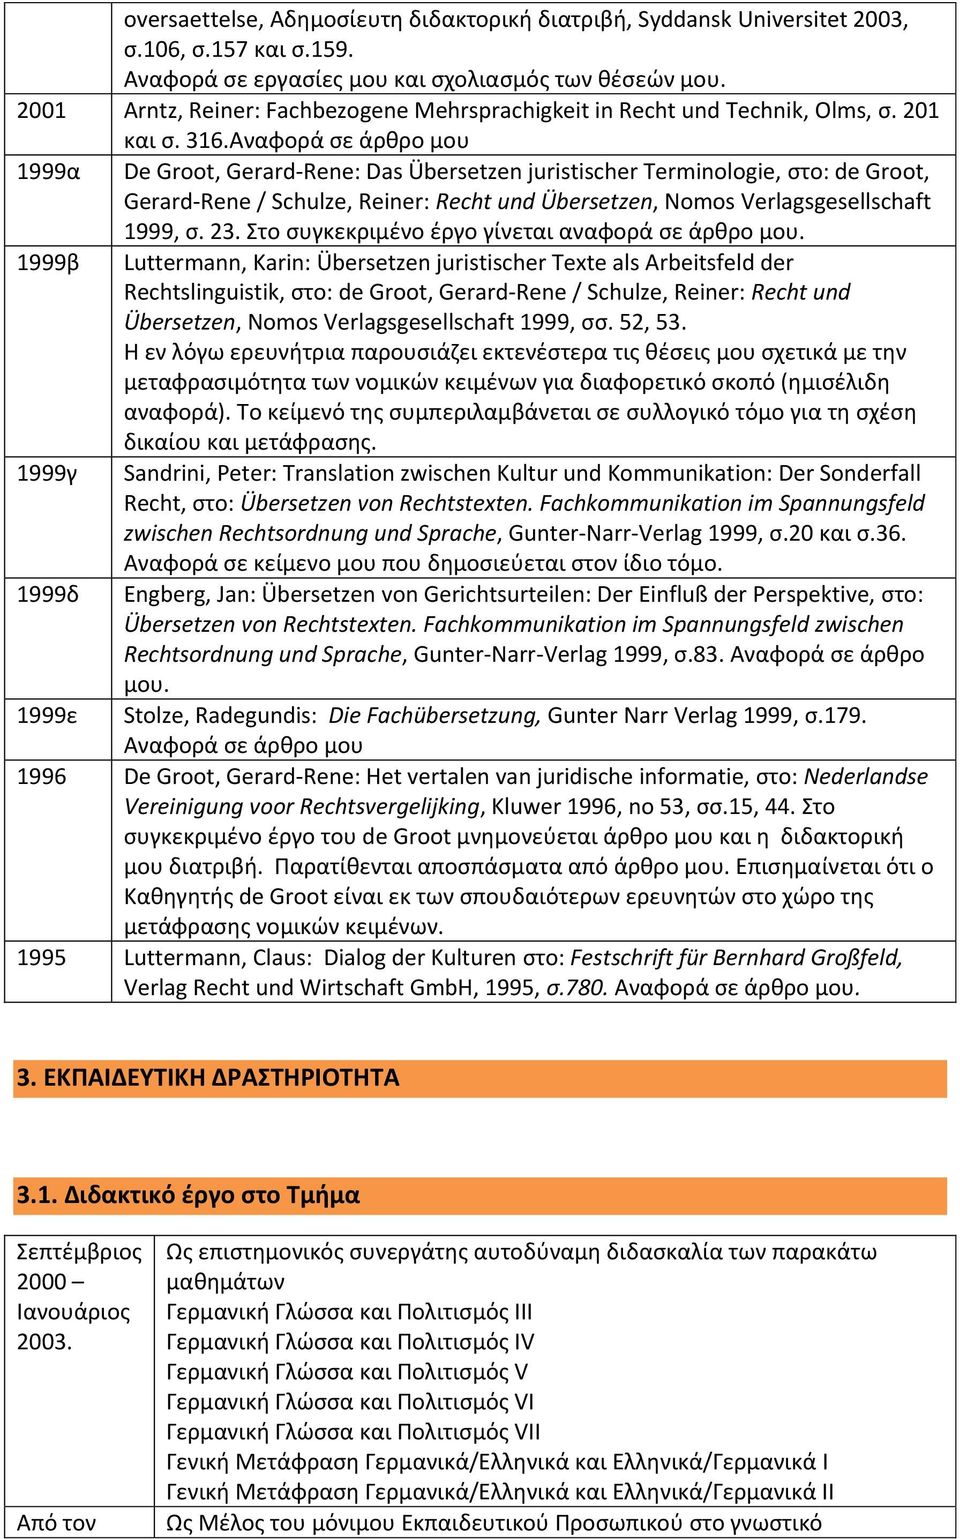 Αναφορά σε άρθρο μου 1999α De Groot, Gerard-Rene: Das Übersetzen juristischer Terminologie, στο: de Groot, Gerard-Rene / Schulze, Reiner: Recht und Übersetzen, Nomos Verlagsgesellschaft 1999, σ. 23.